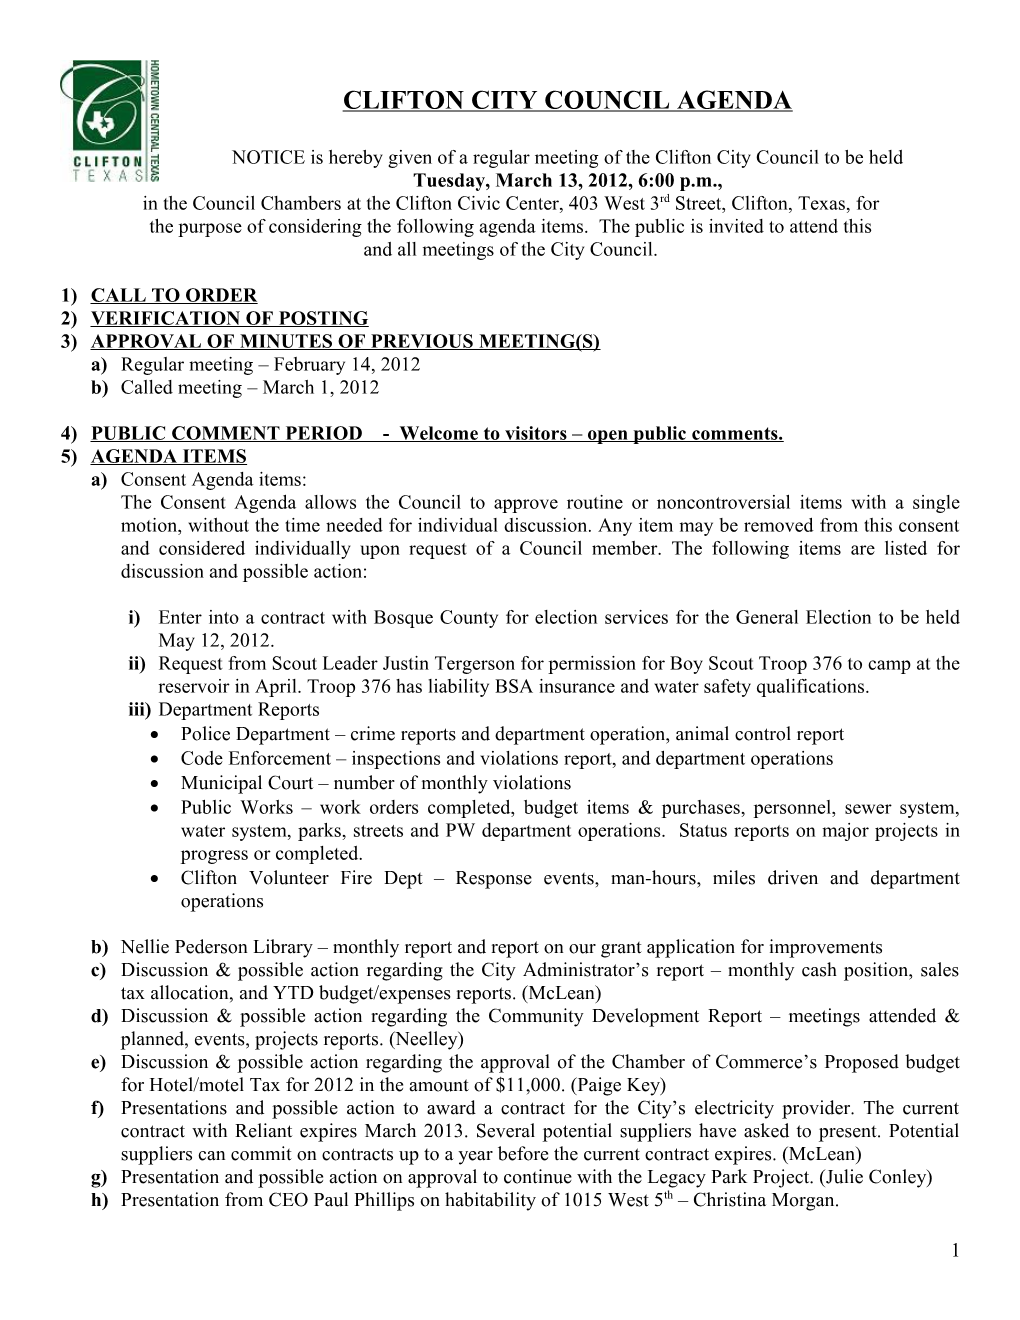 Clifton City Council Agenda